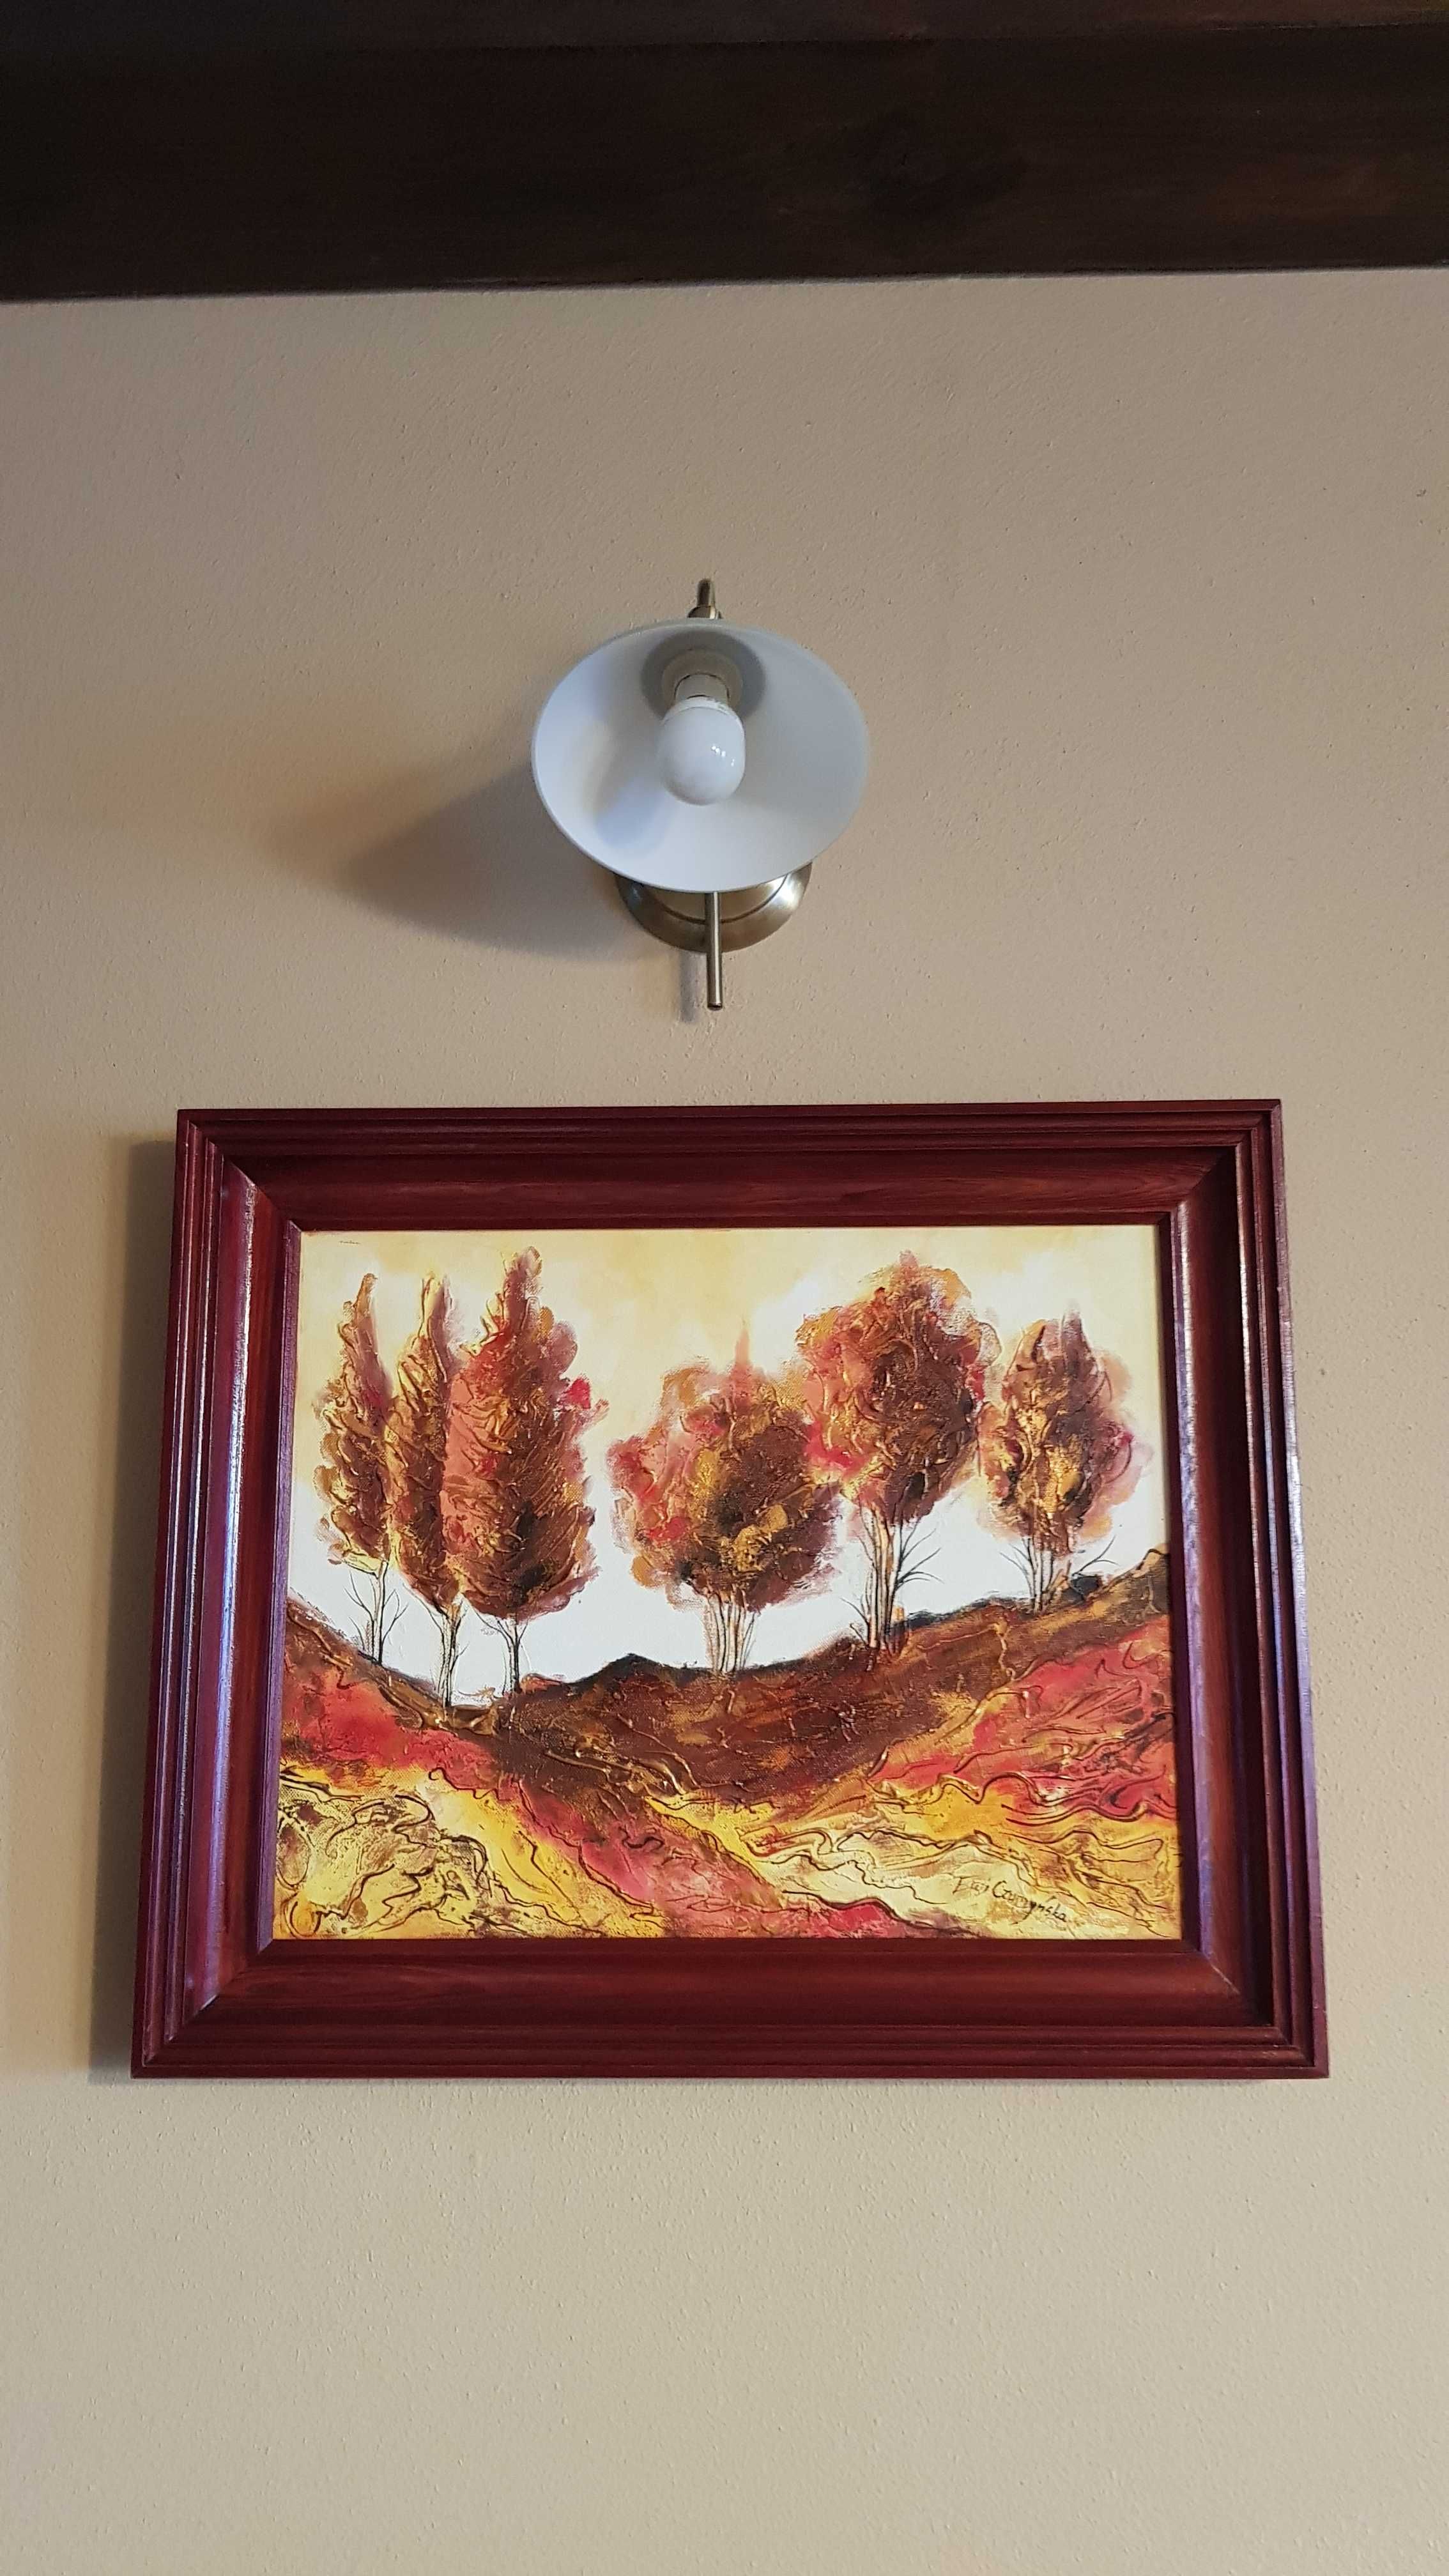 Obraz olejny krajobraz drzewa połysk jesień czerwienie bordo